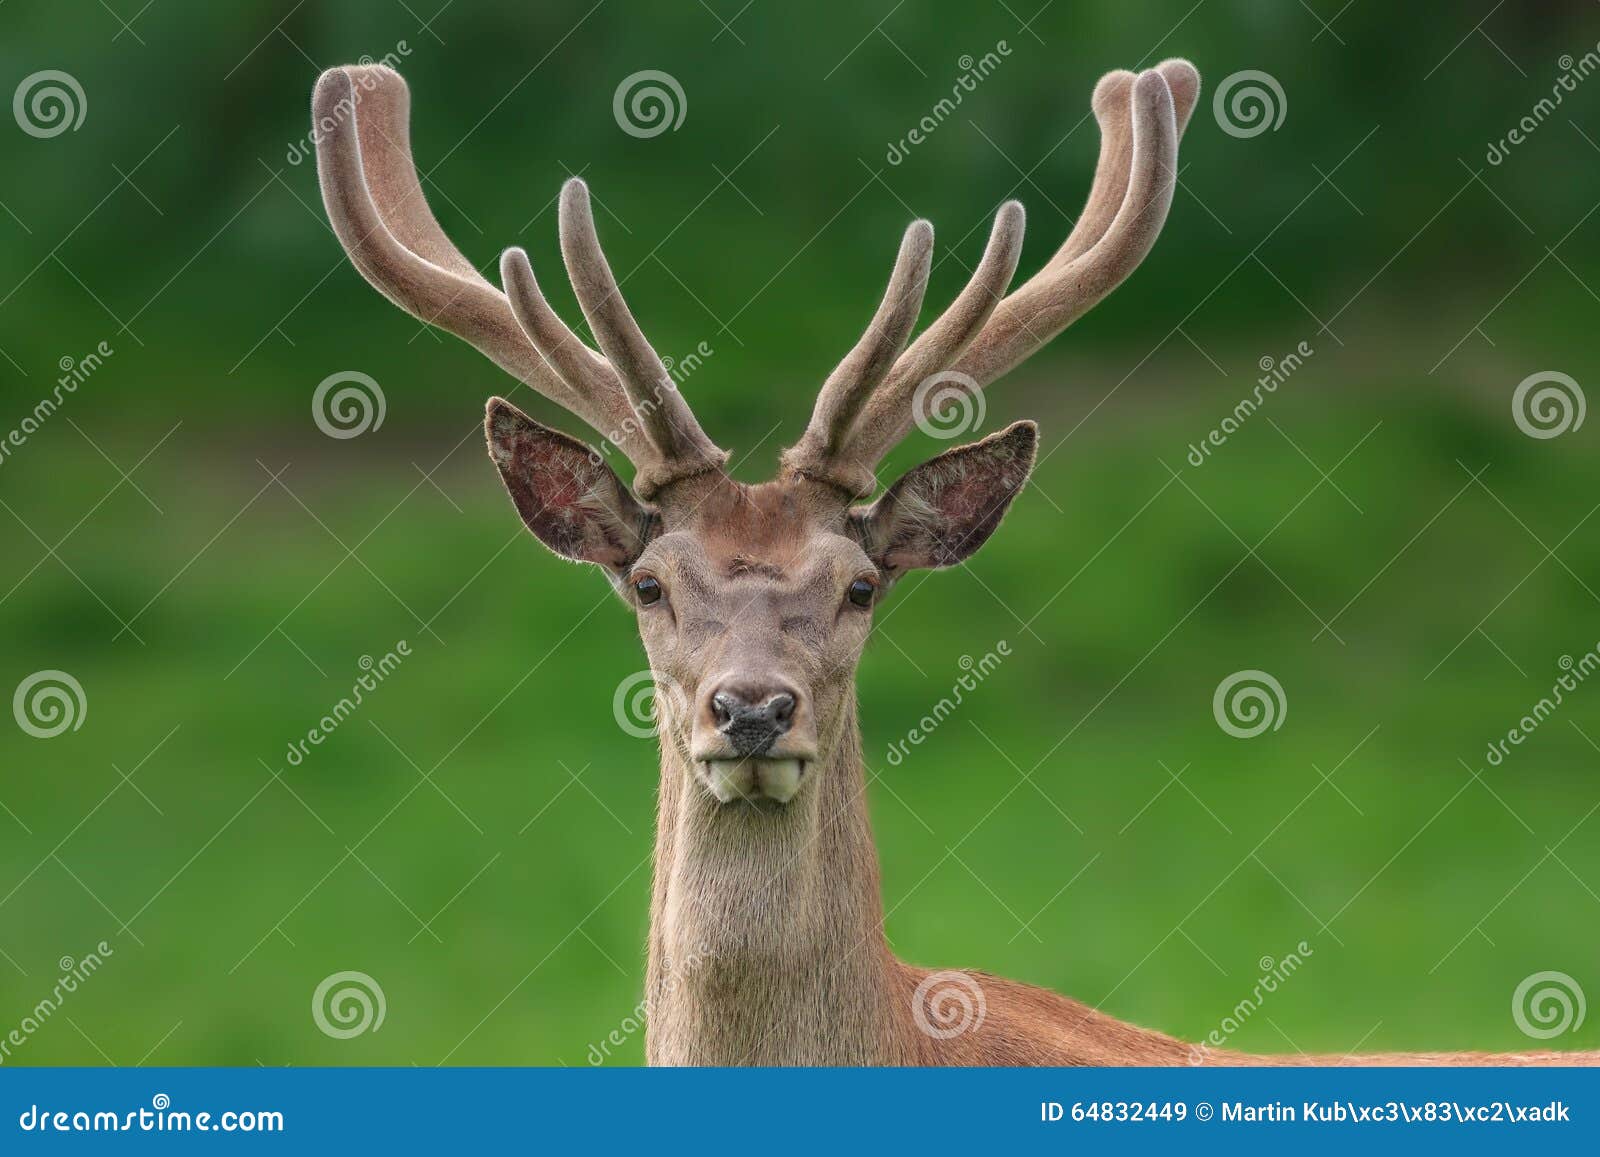 red deer portrait with fuzzy velvet antler